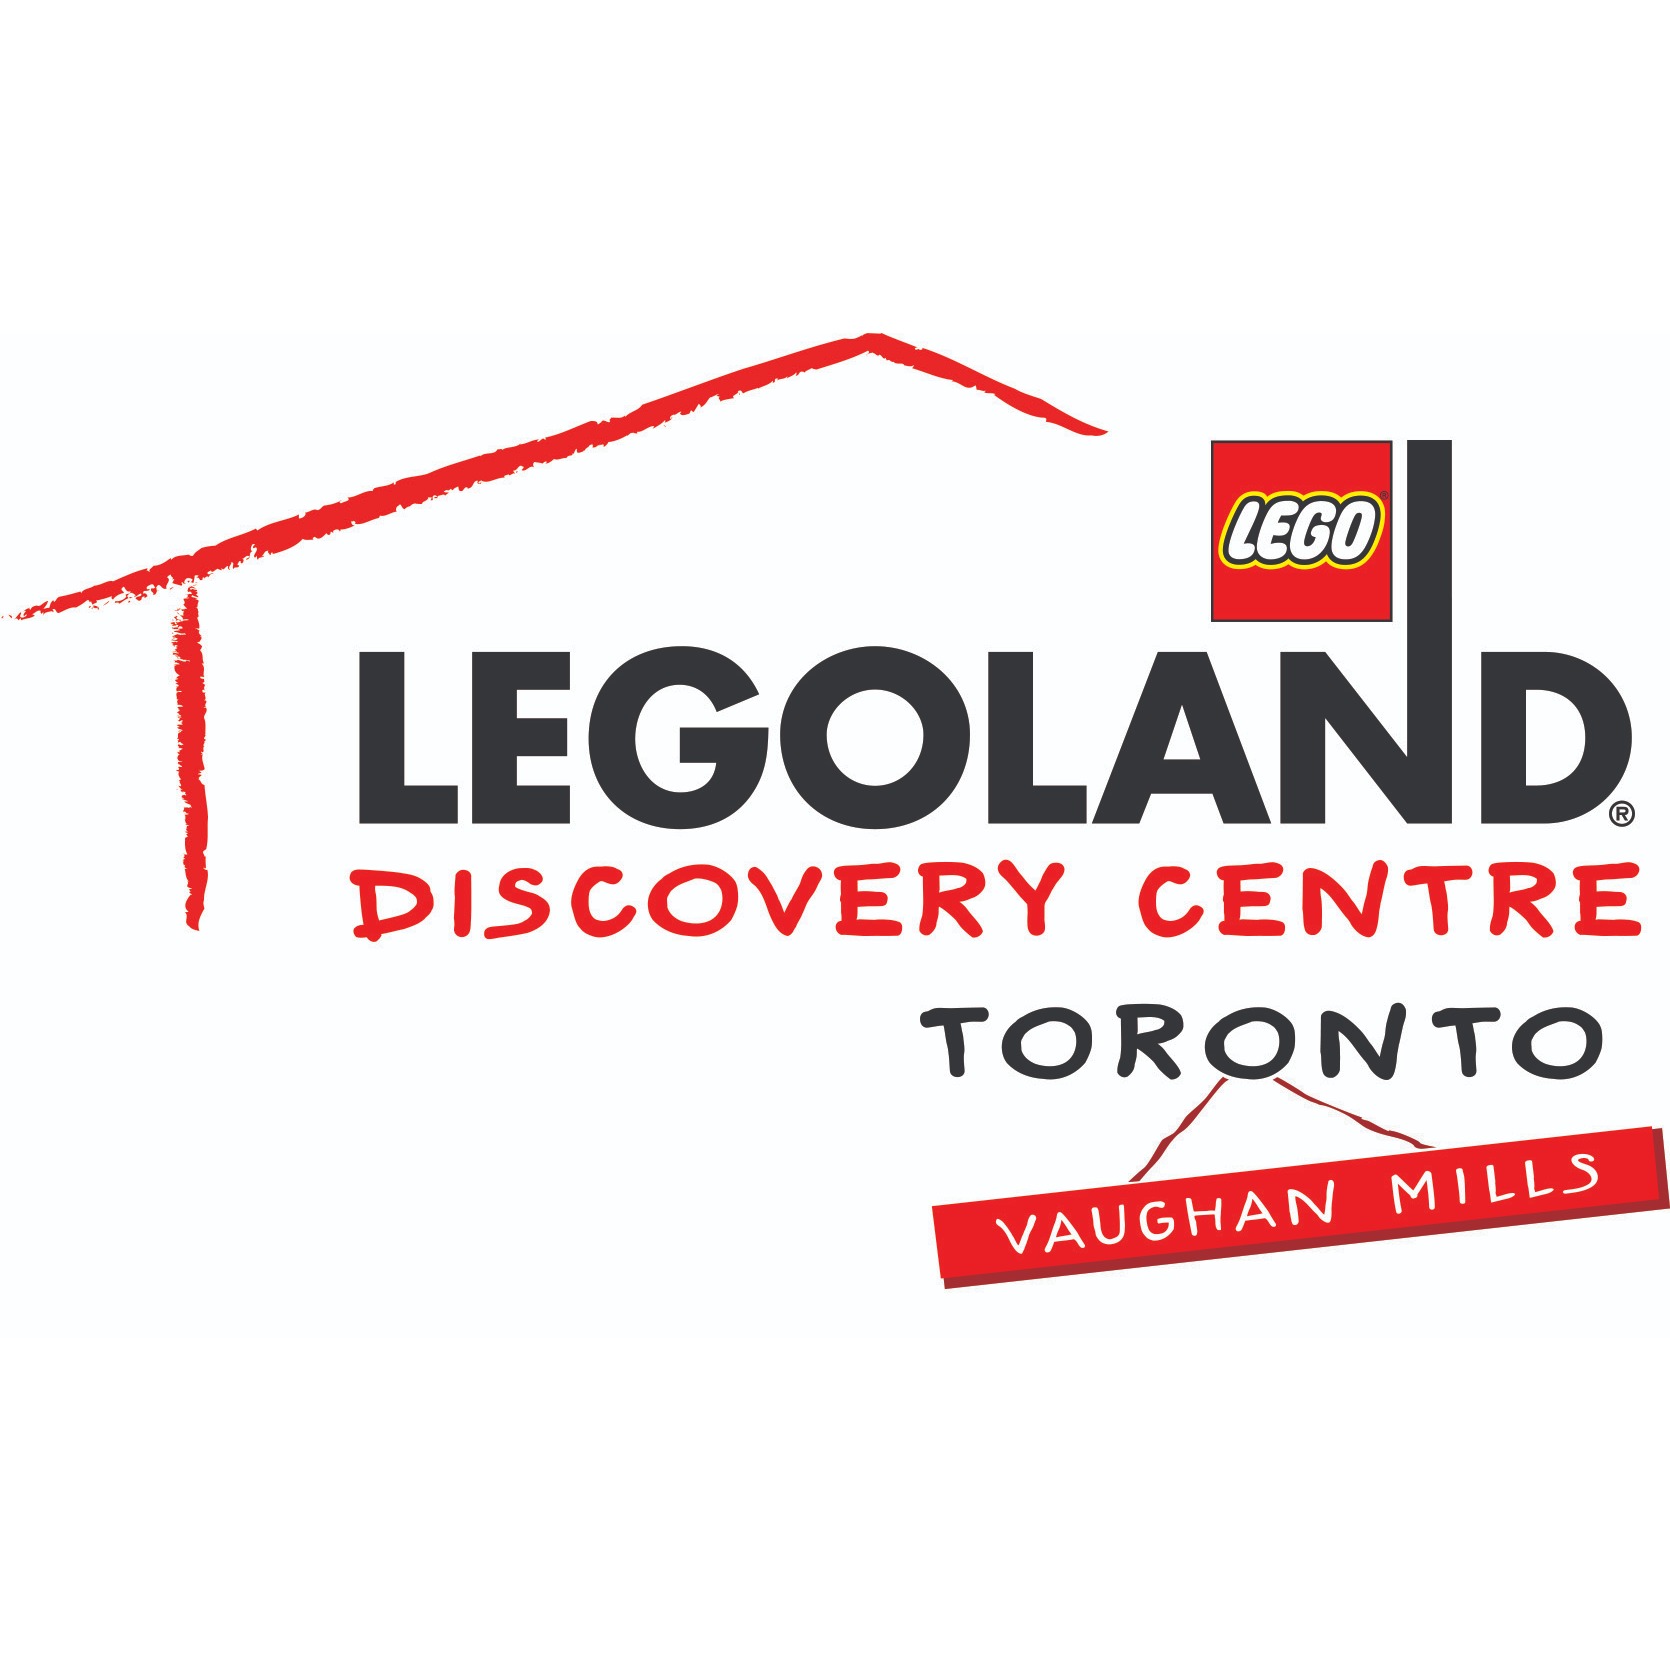 LEGOLAND Discovery Centre Toronto